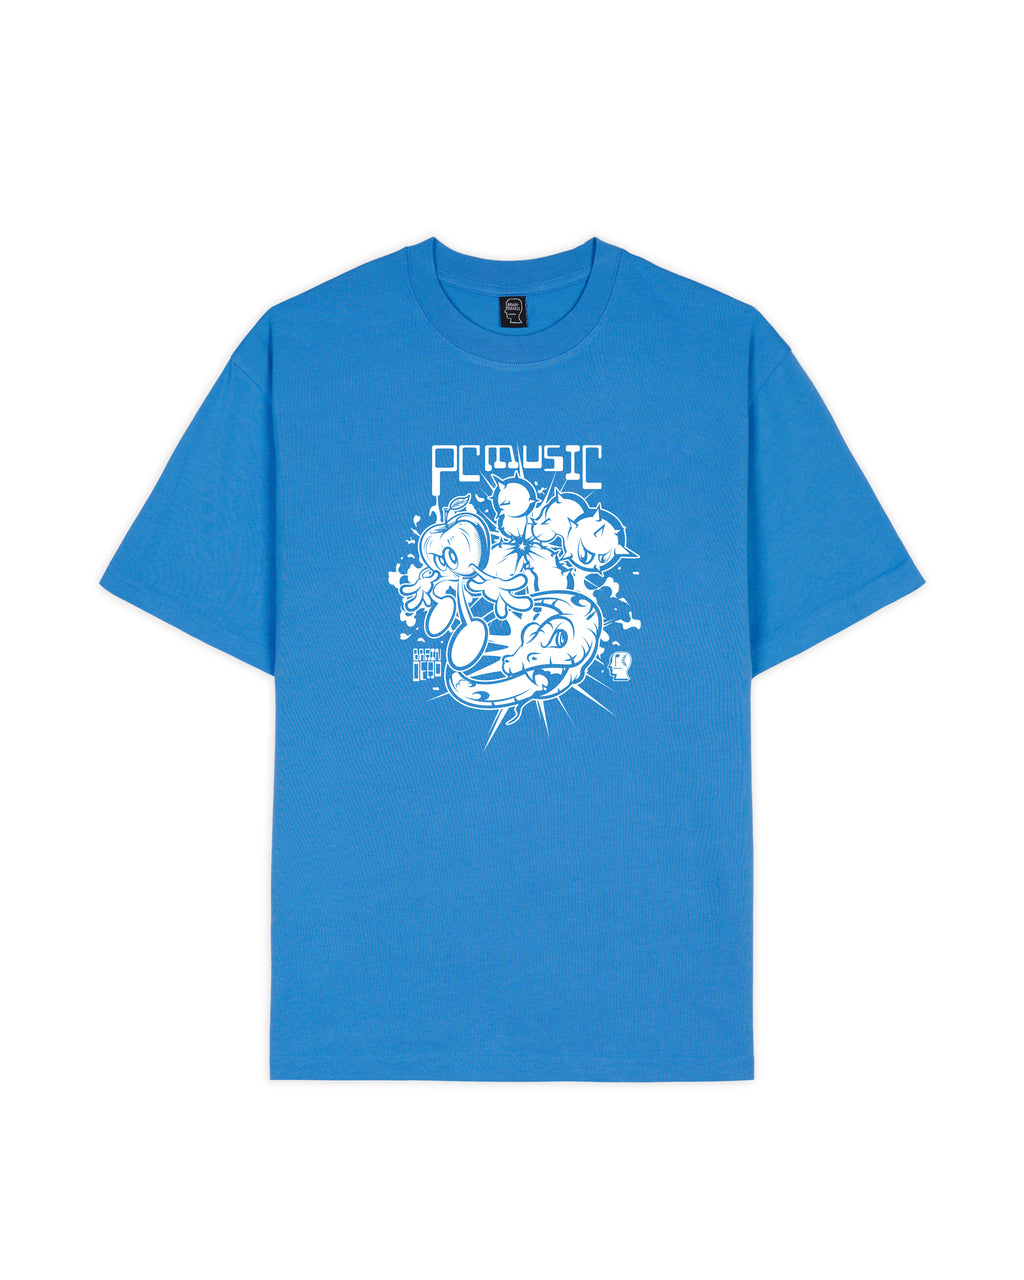 Brain Dead x PC Music T-shirt - China Blue